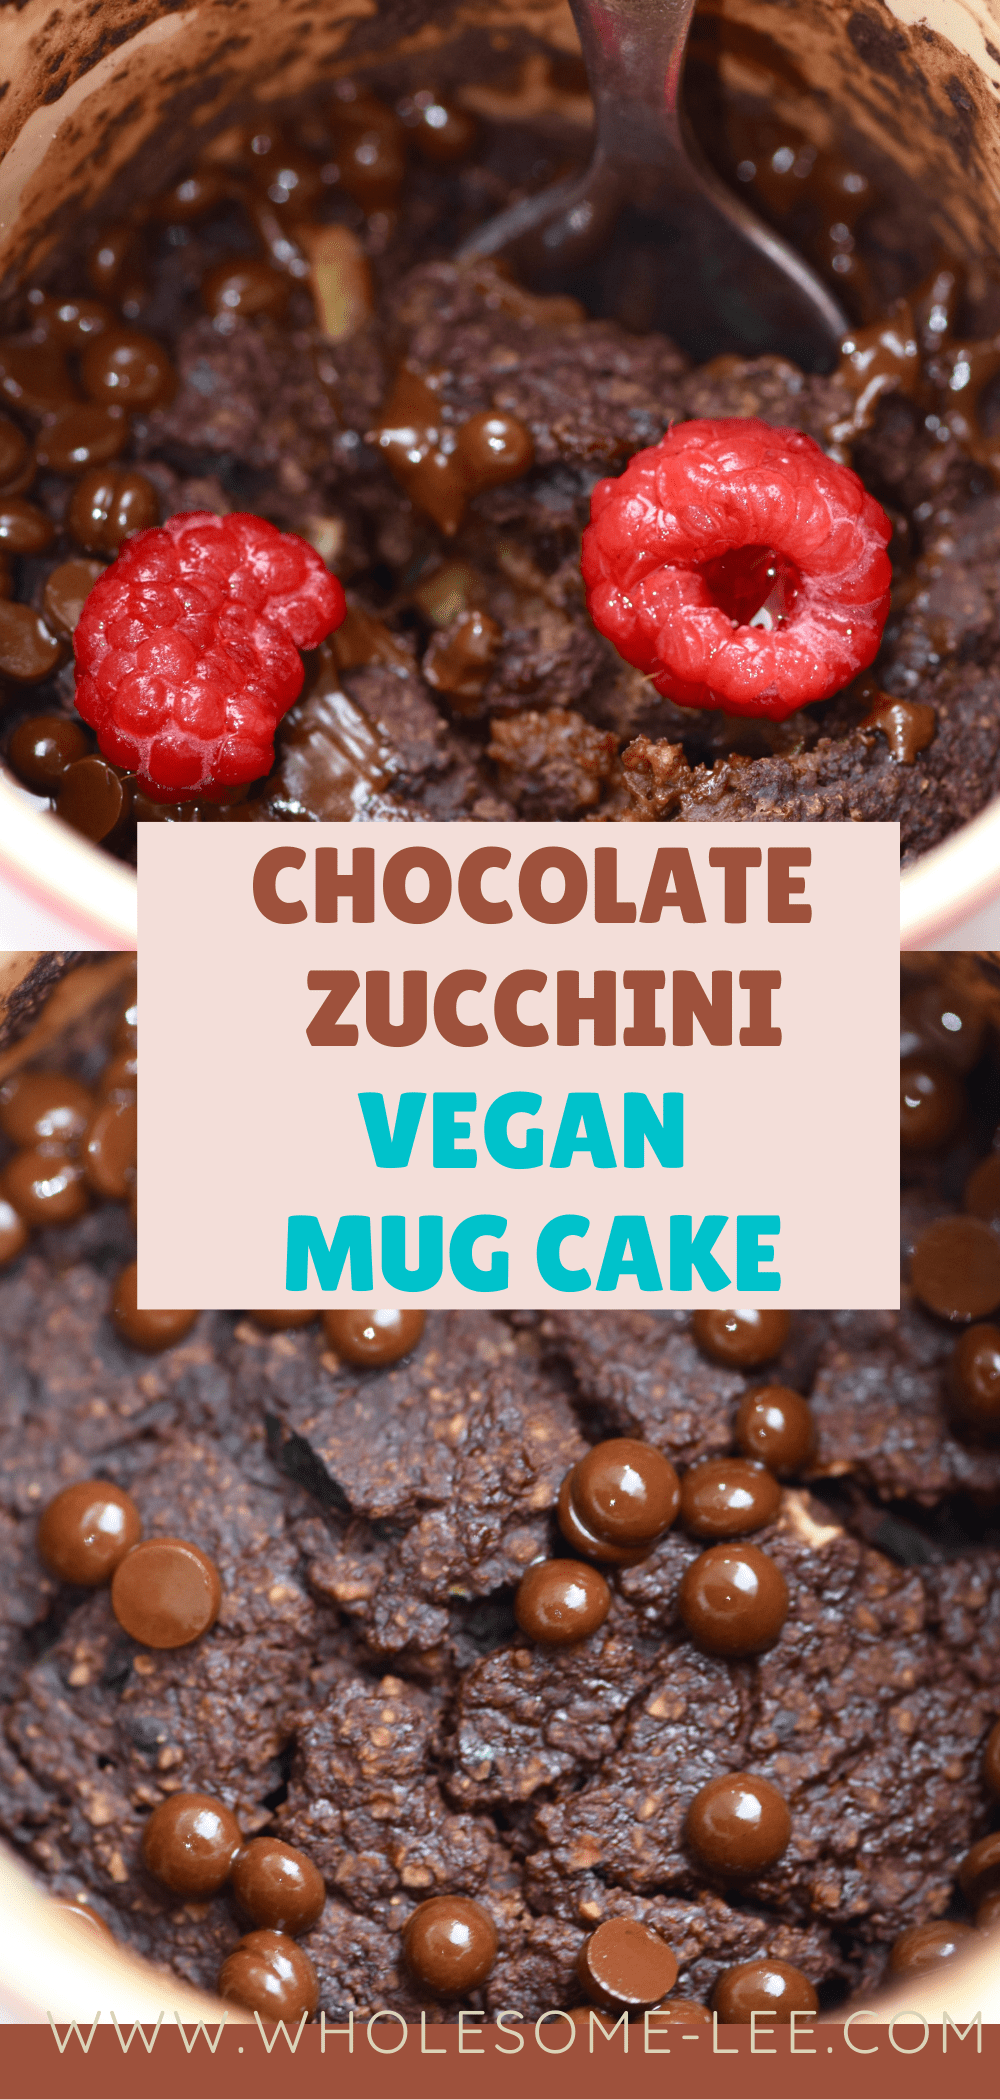 Chocolate zucchini vegan mug cake